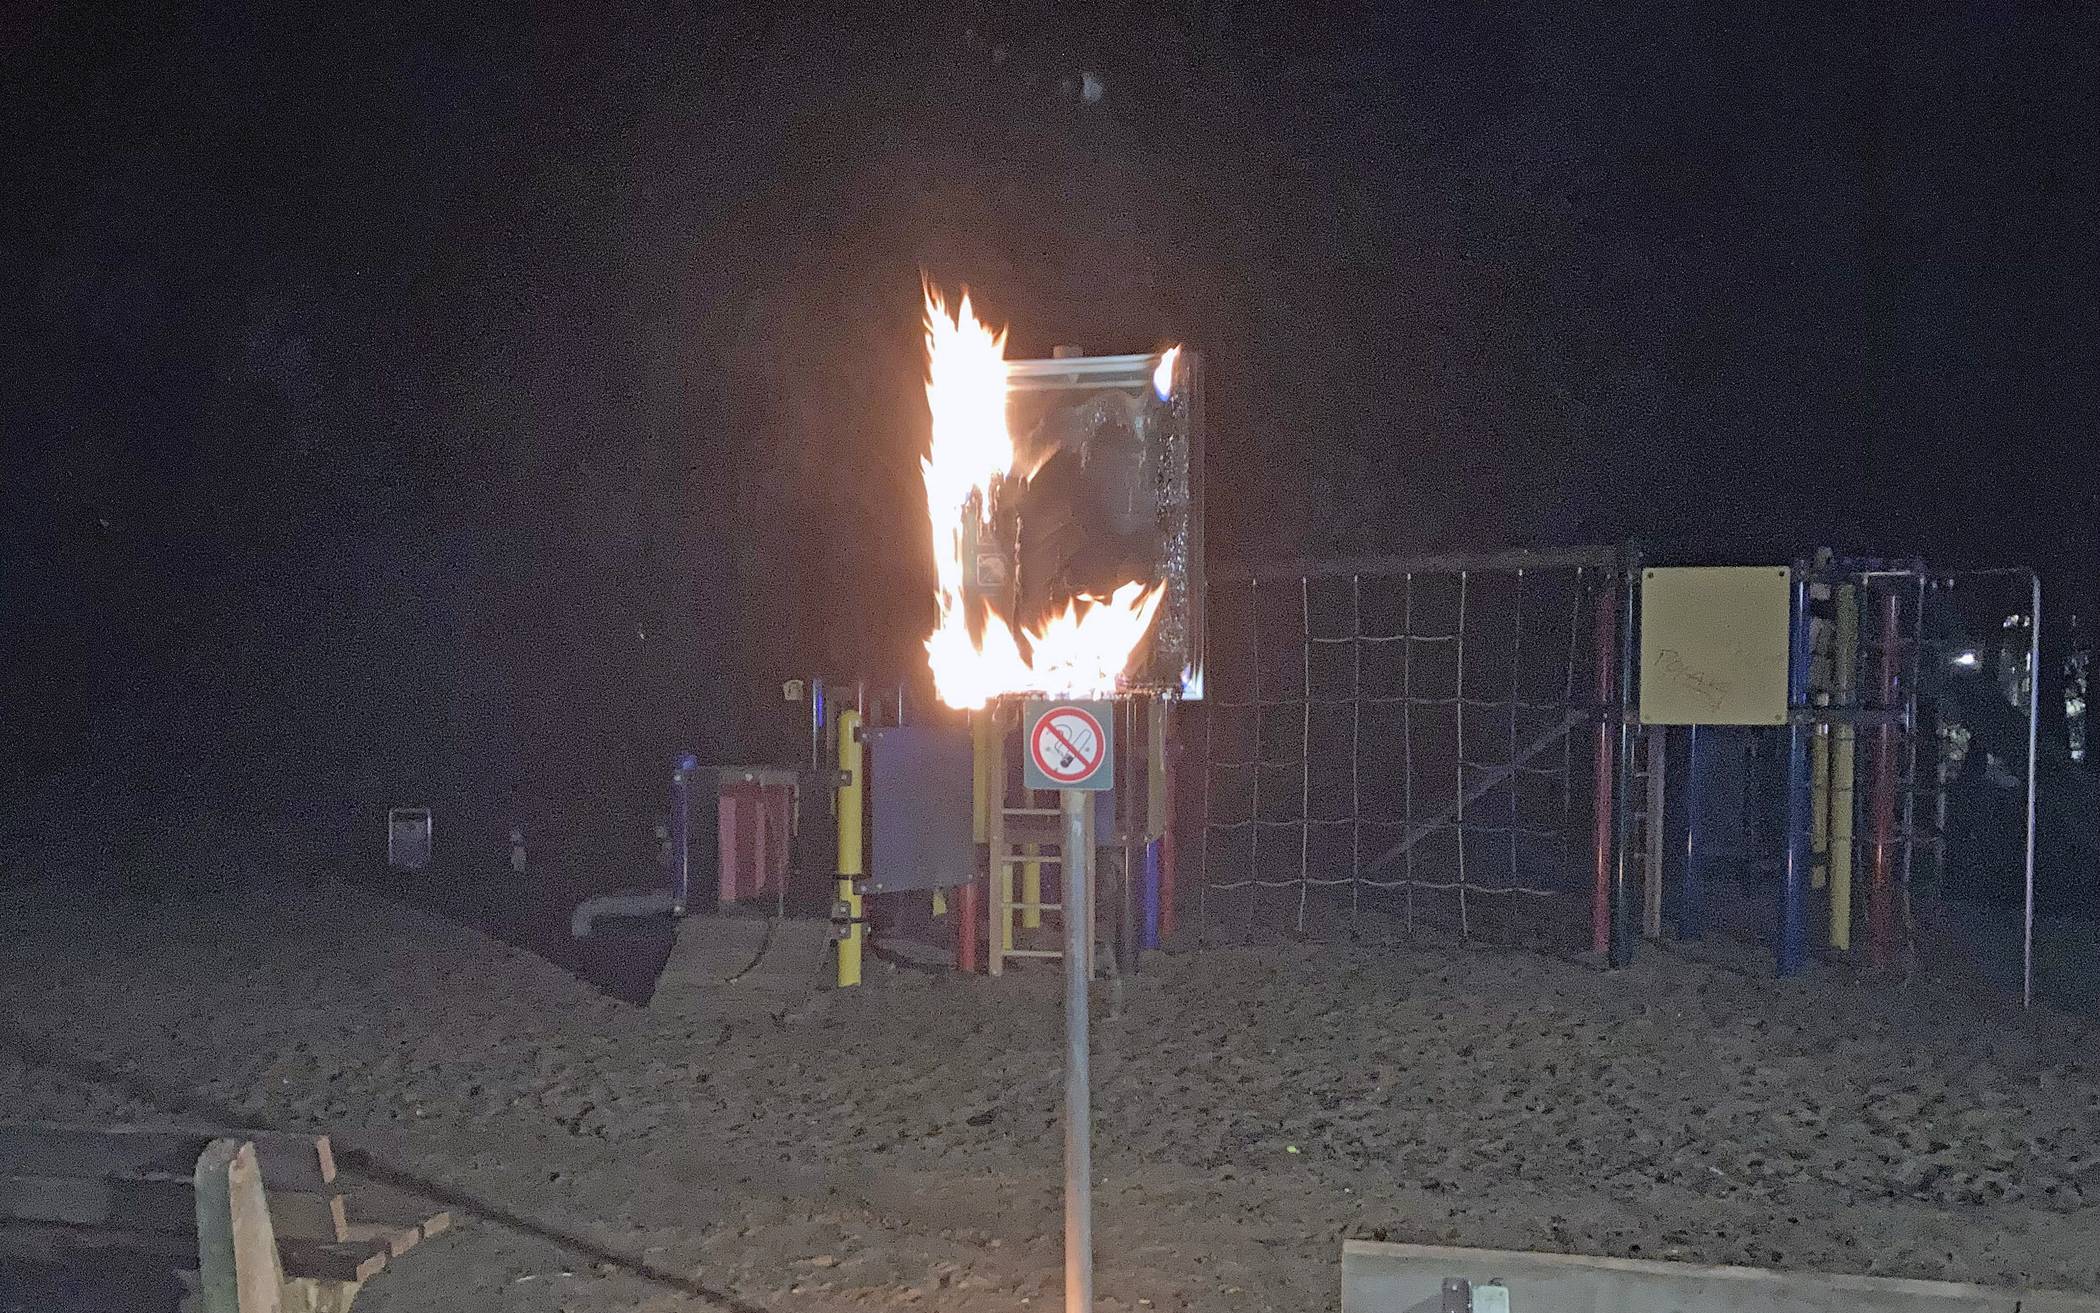  Am Montagabend wurde eine Hinweistafel auf einem Spielplatz in Brand gesetzt. Die Polizei ermittelt und sucht Zeugen. 